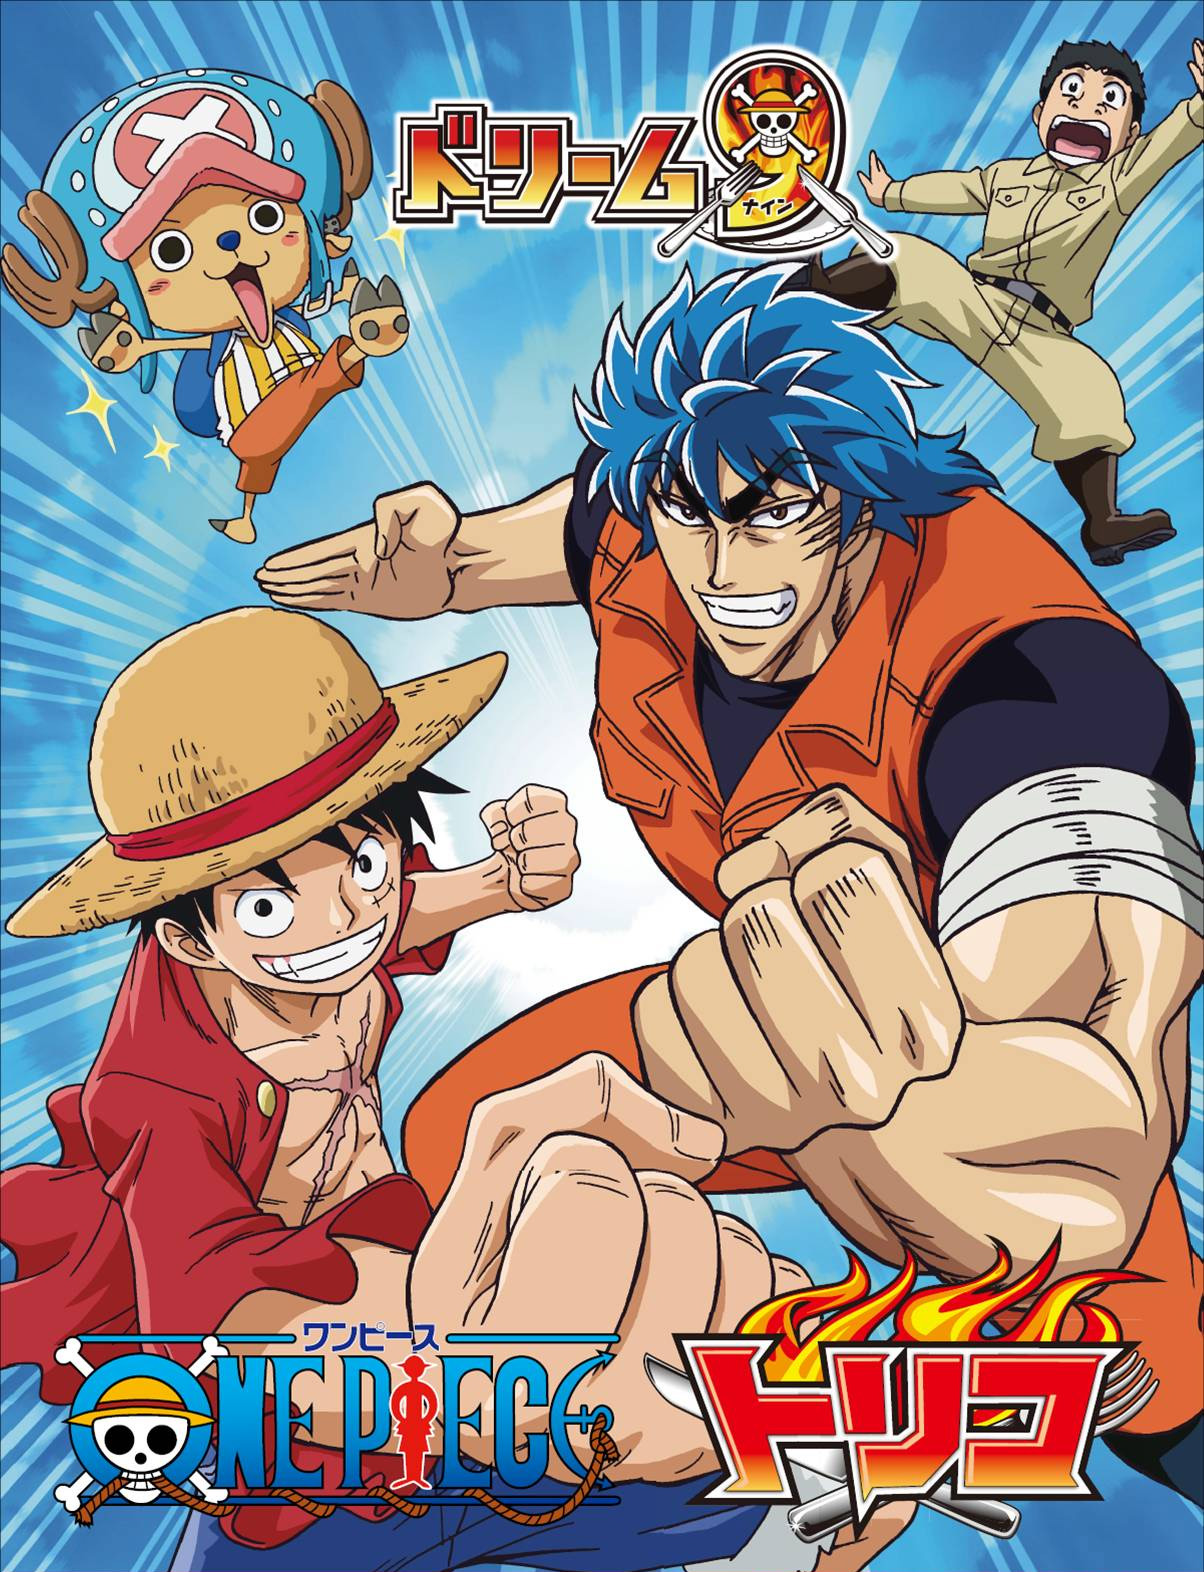 Dragon Ball Z x One Piece x Toriko by SuperMavee on DeviantArt